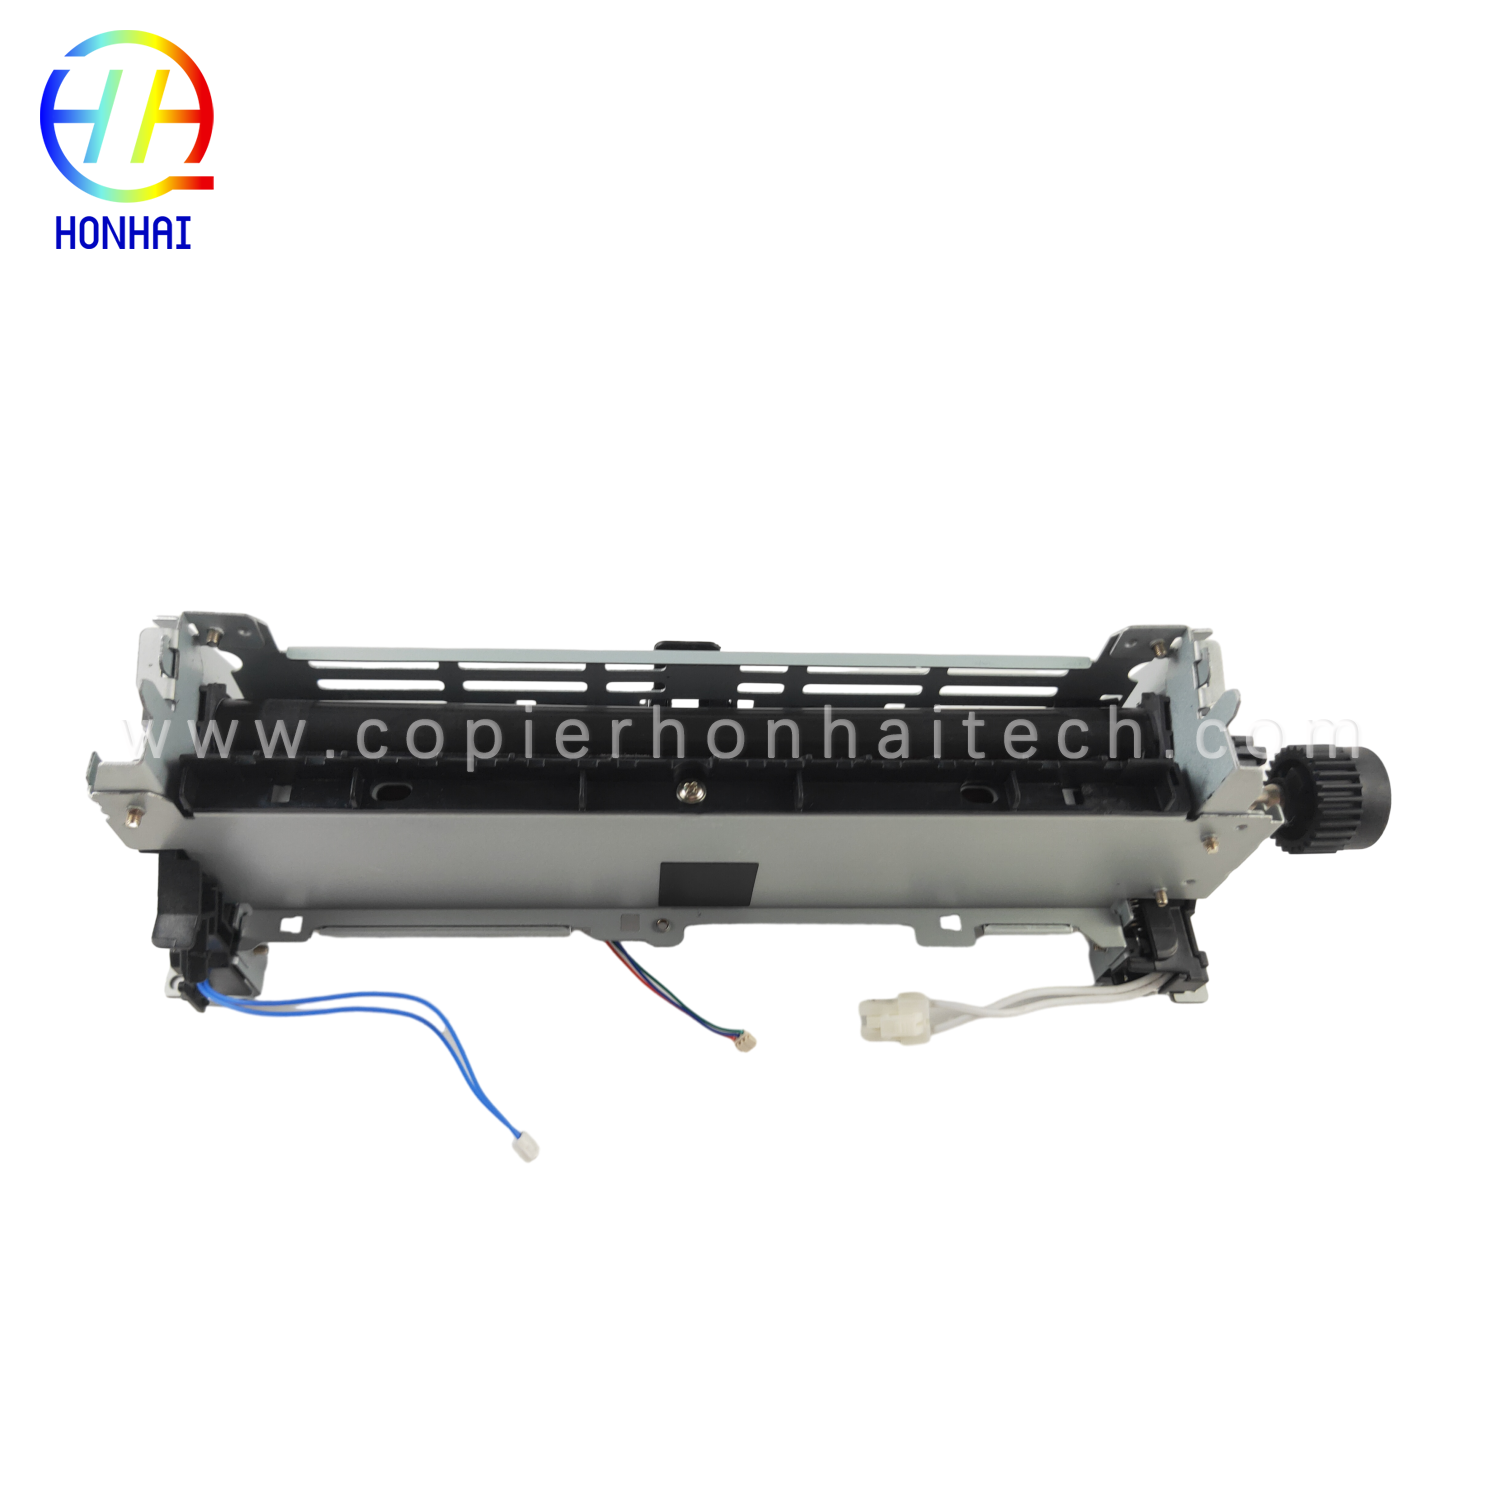 https://www.copierhonhaitech.com/fuser-assembly-for-hp-laserjet-pro-400-m401n-m401dn-m401dw-mfp-m425dn-m425dw-rm1-8809-000-fuser-unit-product/